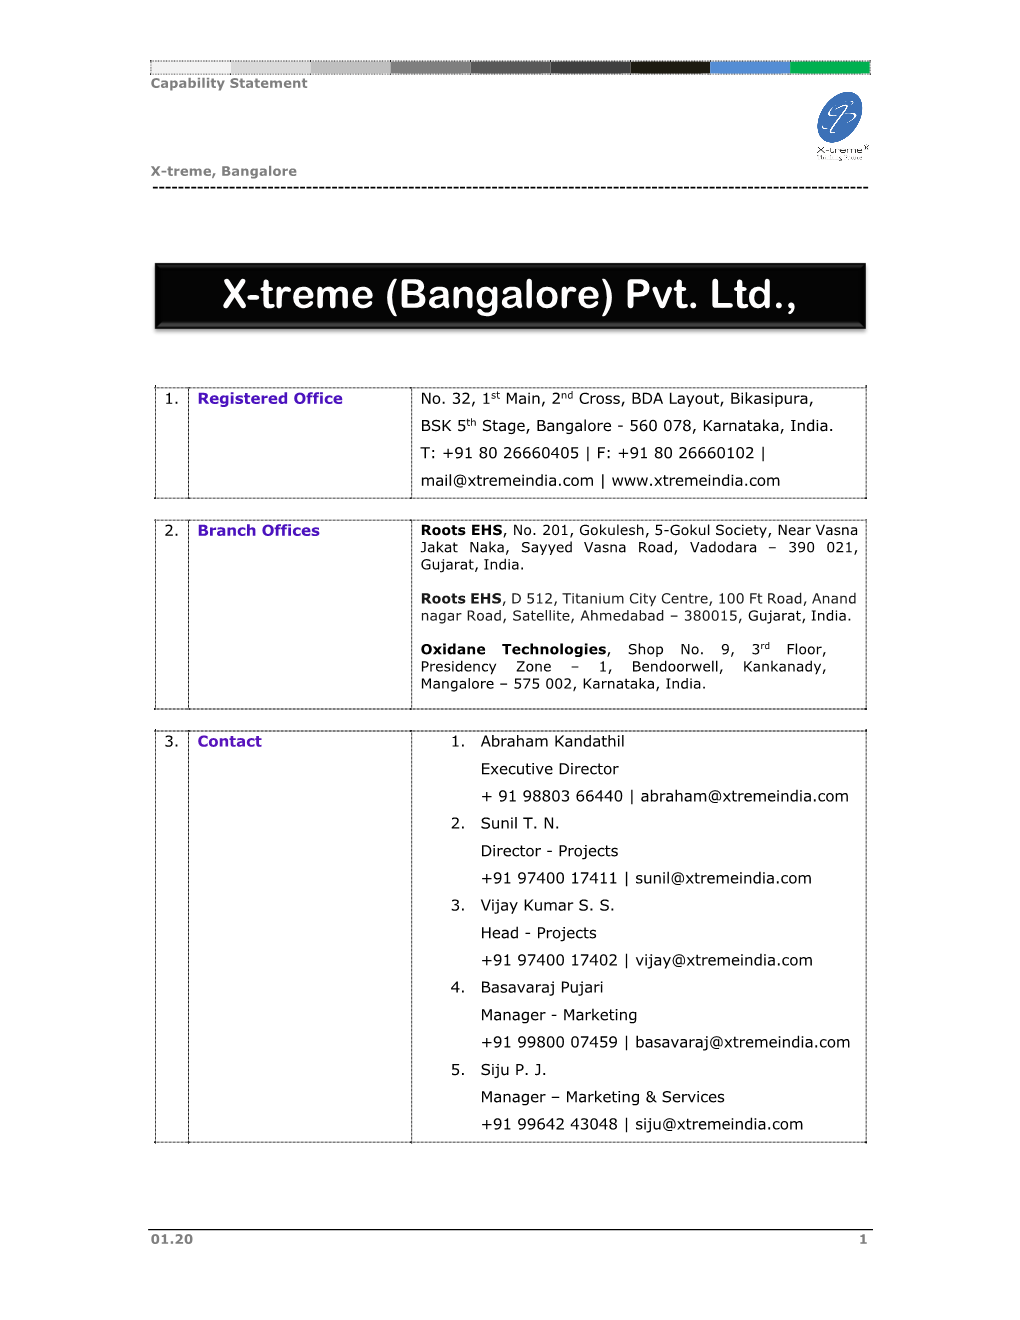 X-Treme (Bangalore) Pvt. Ltd